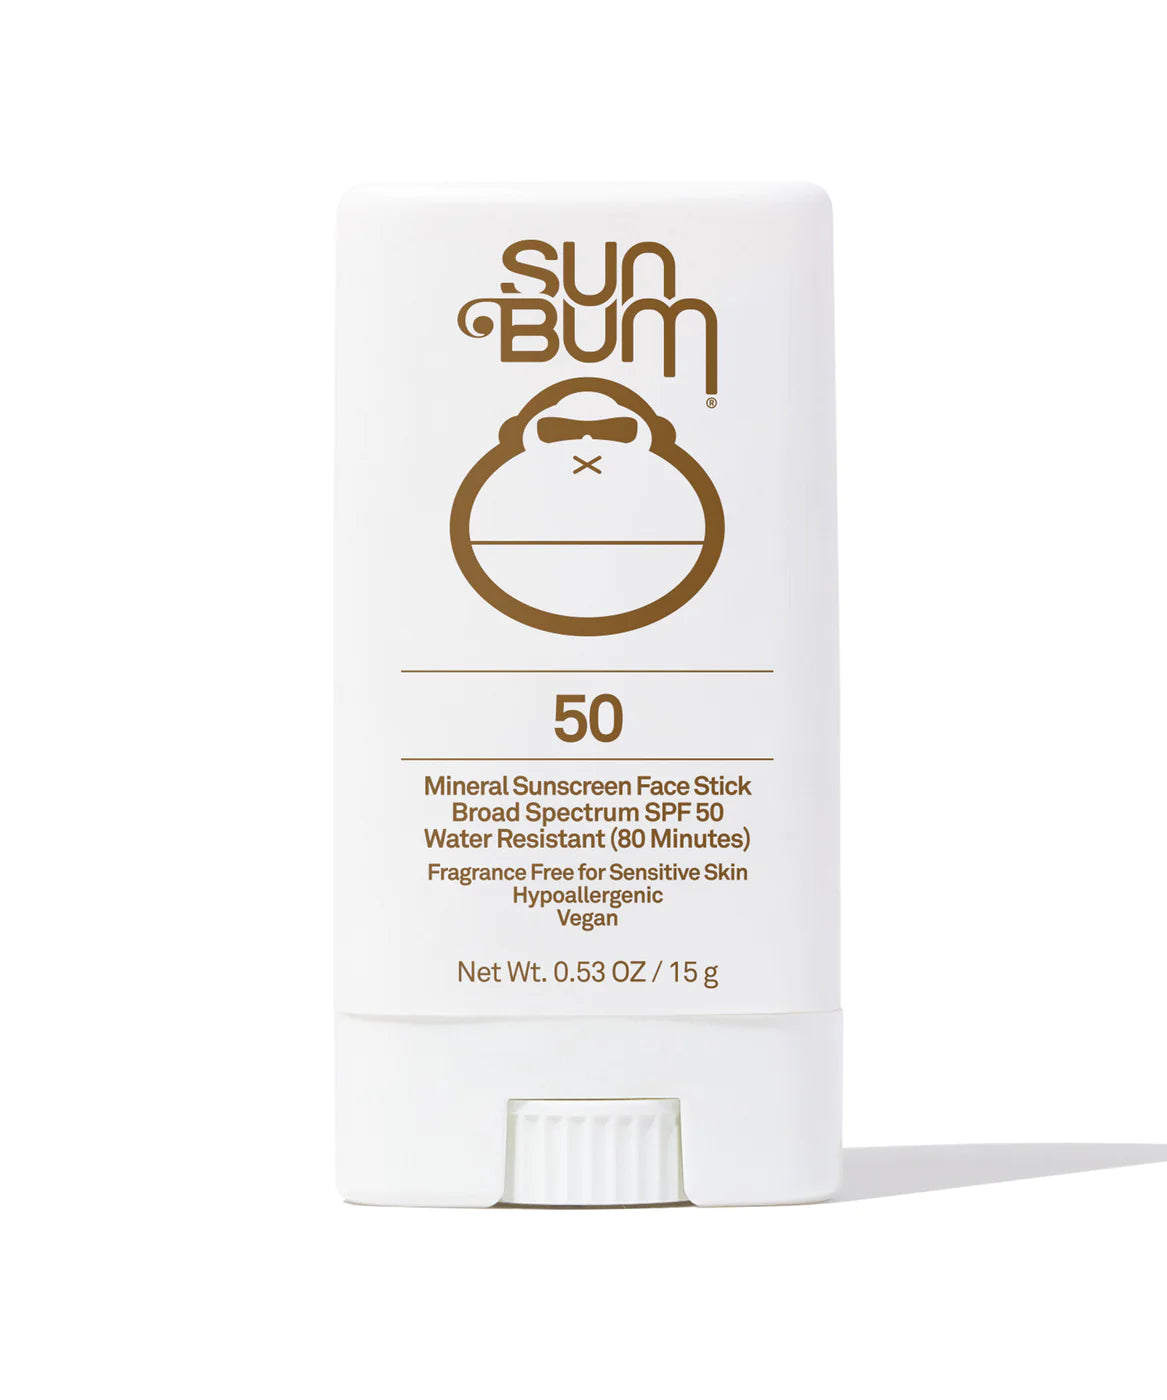 SUN BUM - Mineral SPF 50 Sunscreen Face Stick